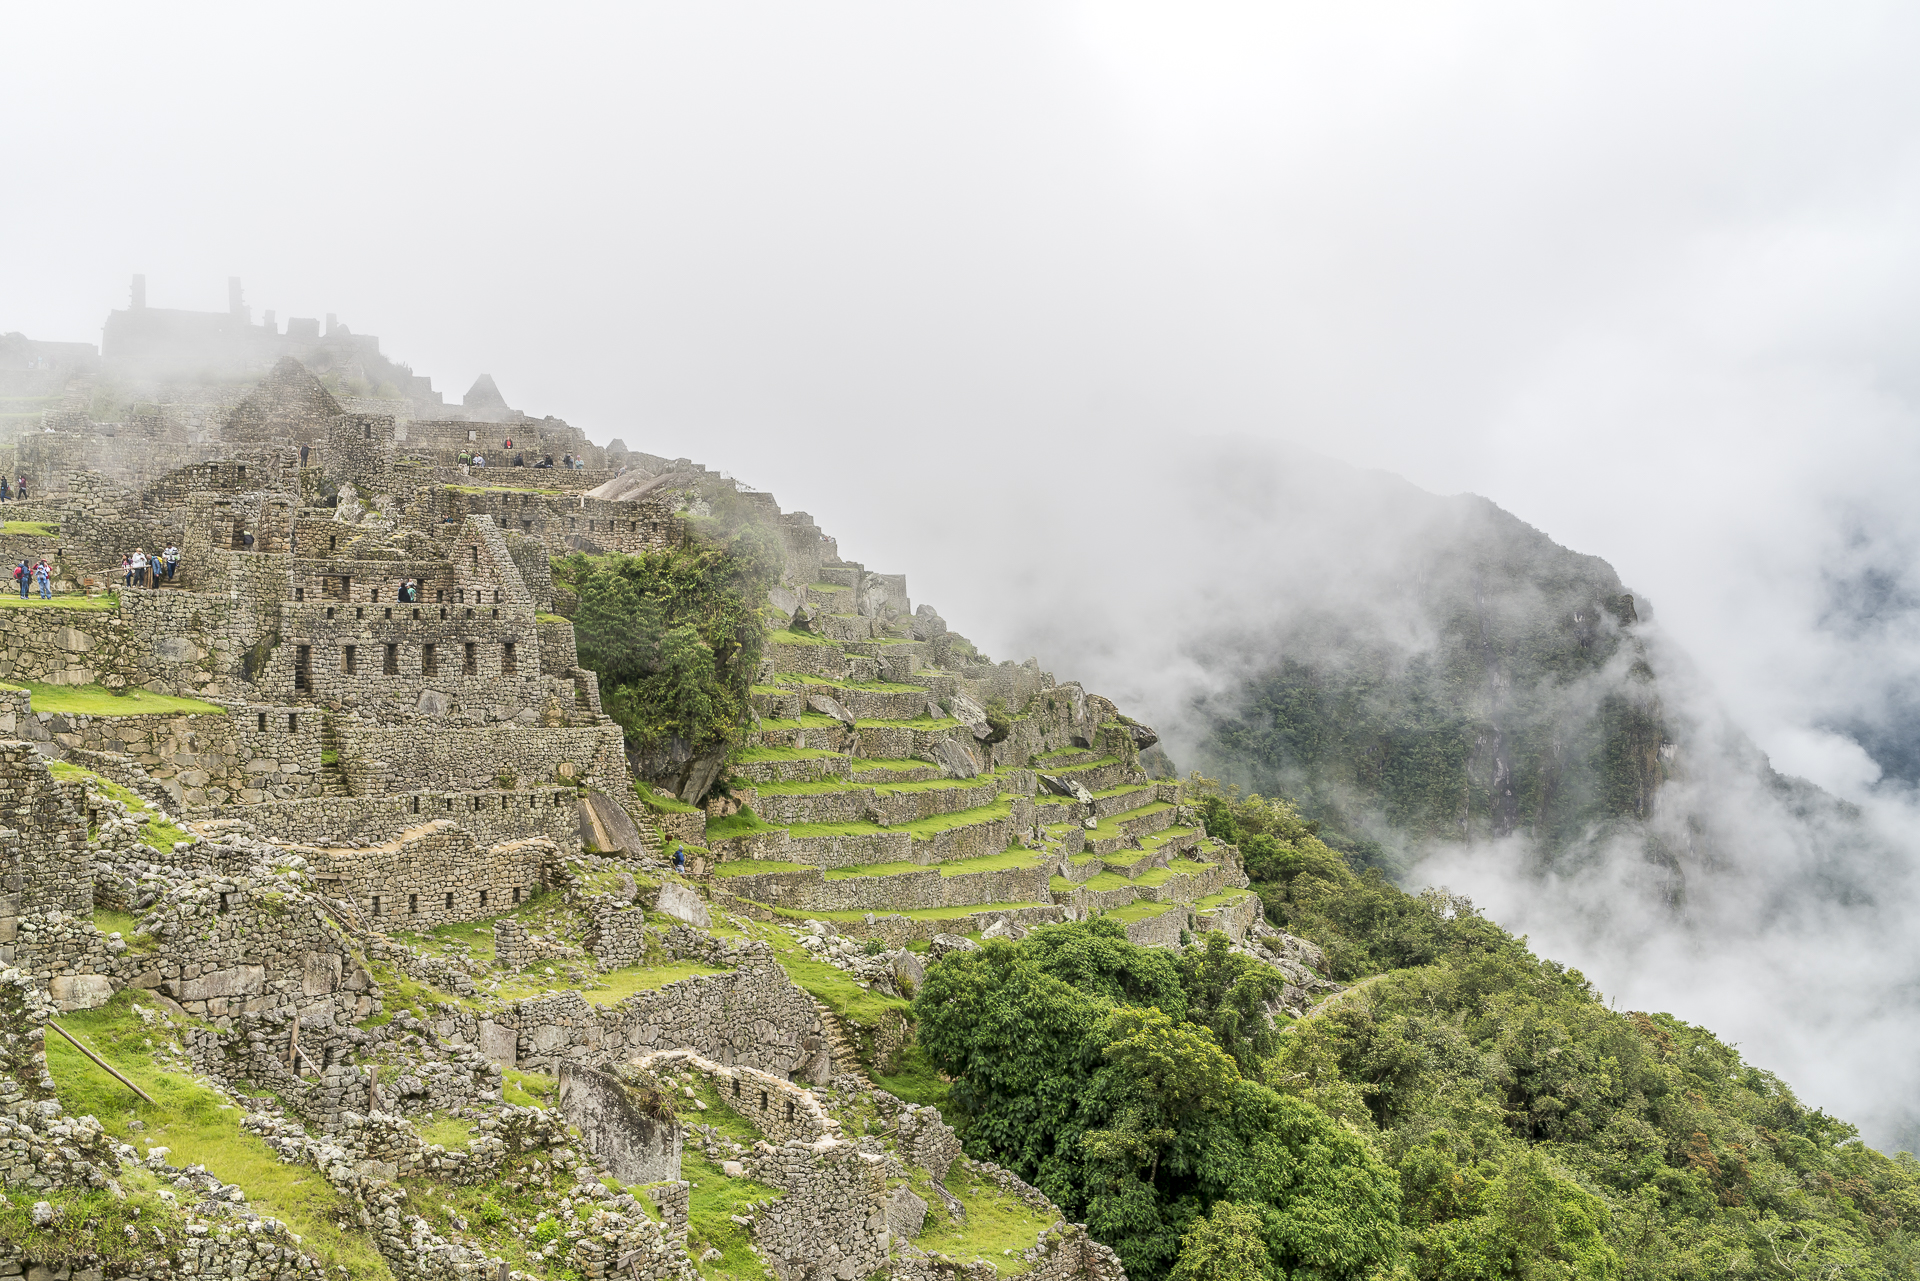 Ruinen Machu Picchu